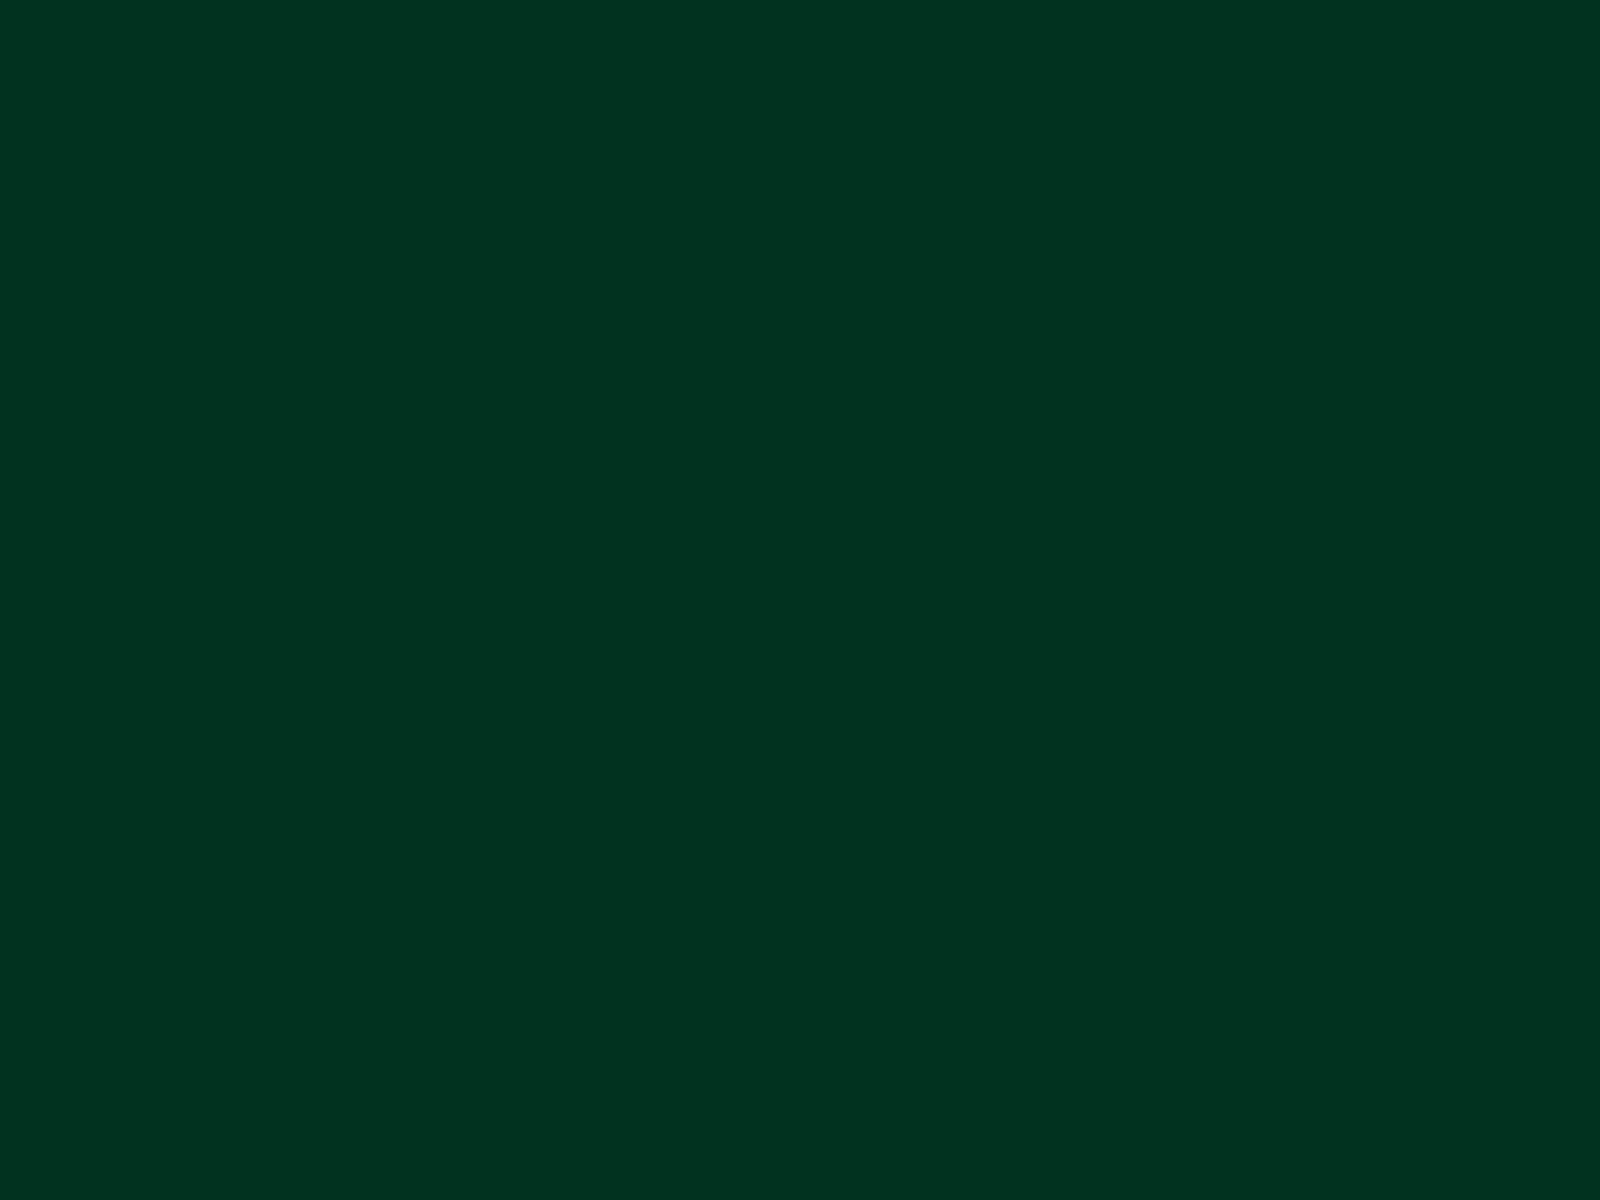 Background Green Dark - KibrisPDR